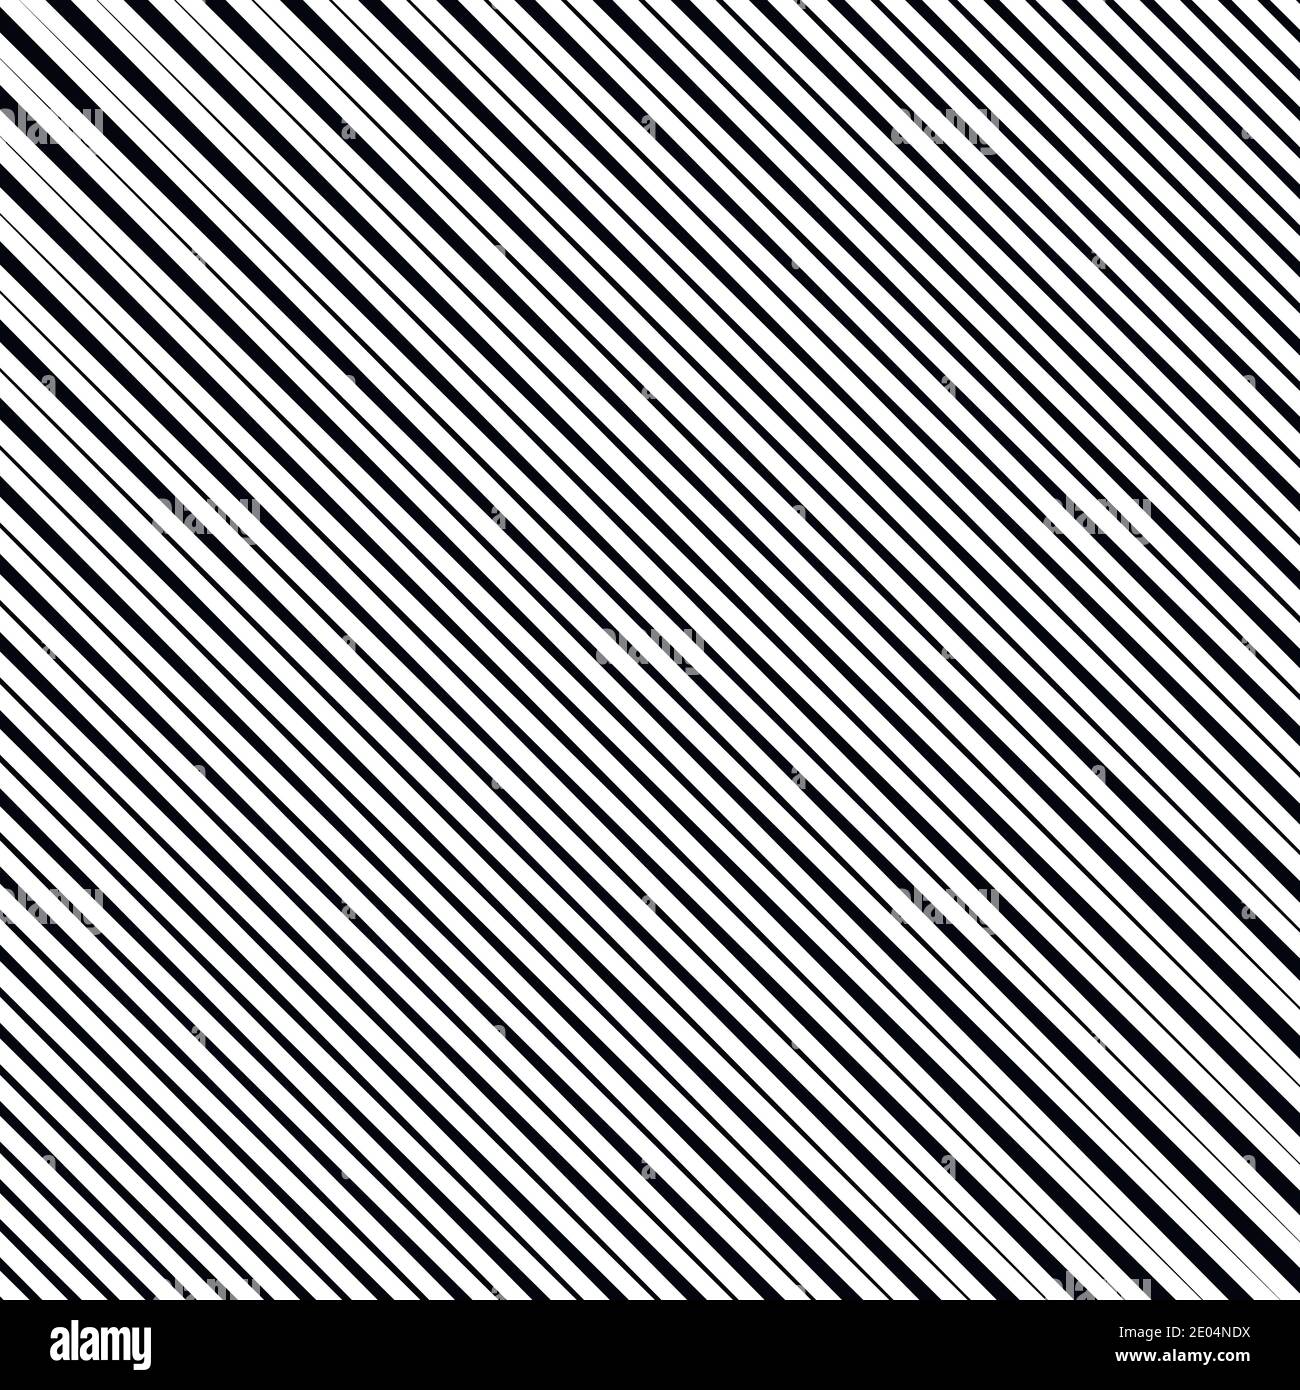 pattern lineare di linee diagonali effetto stripe, texture, vettore astratto linee diagonali di fondo delle strisce coniche Illustrazione Vettoriale